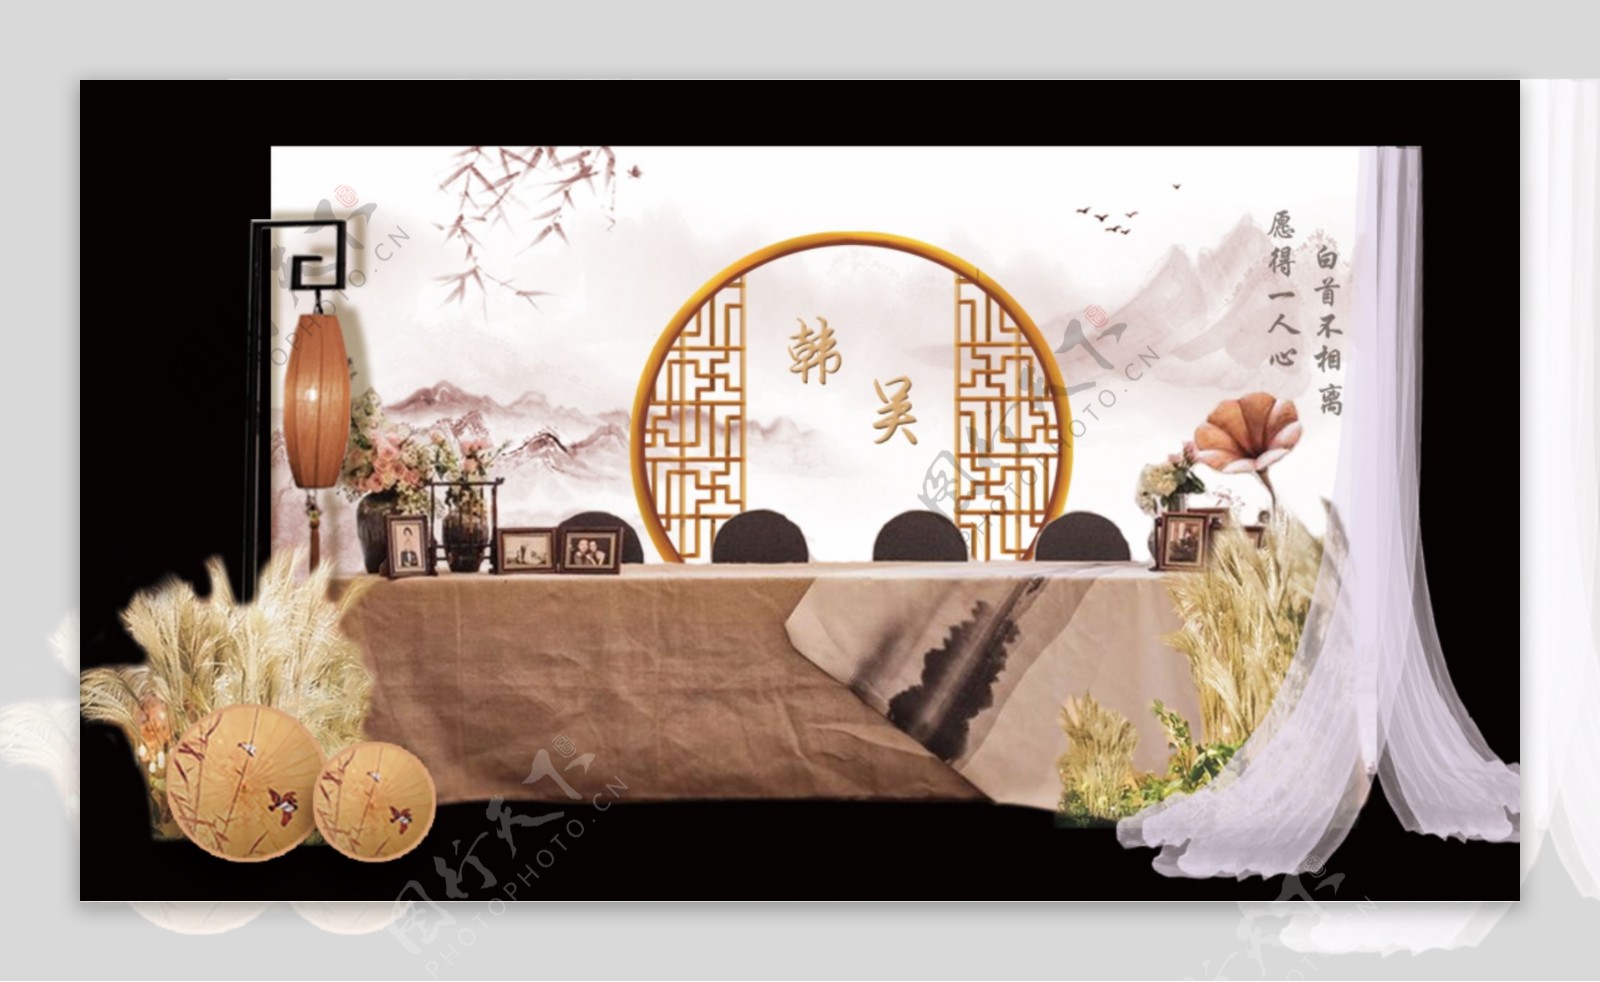 新中式古典婚礼效果图